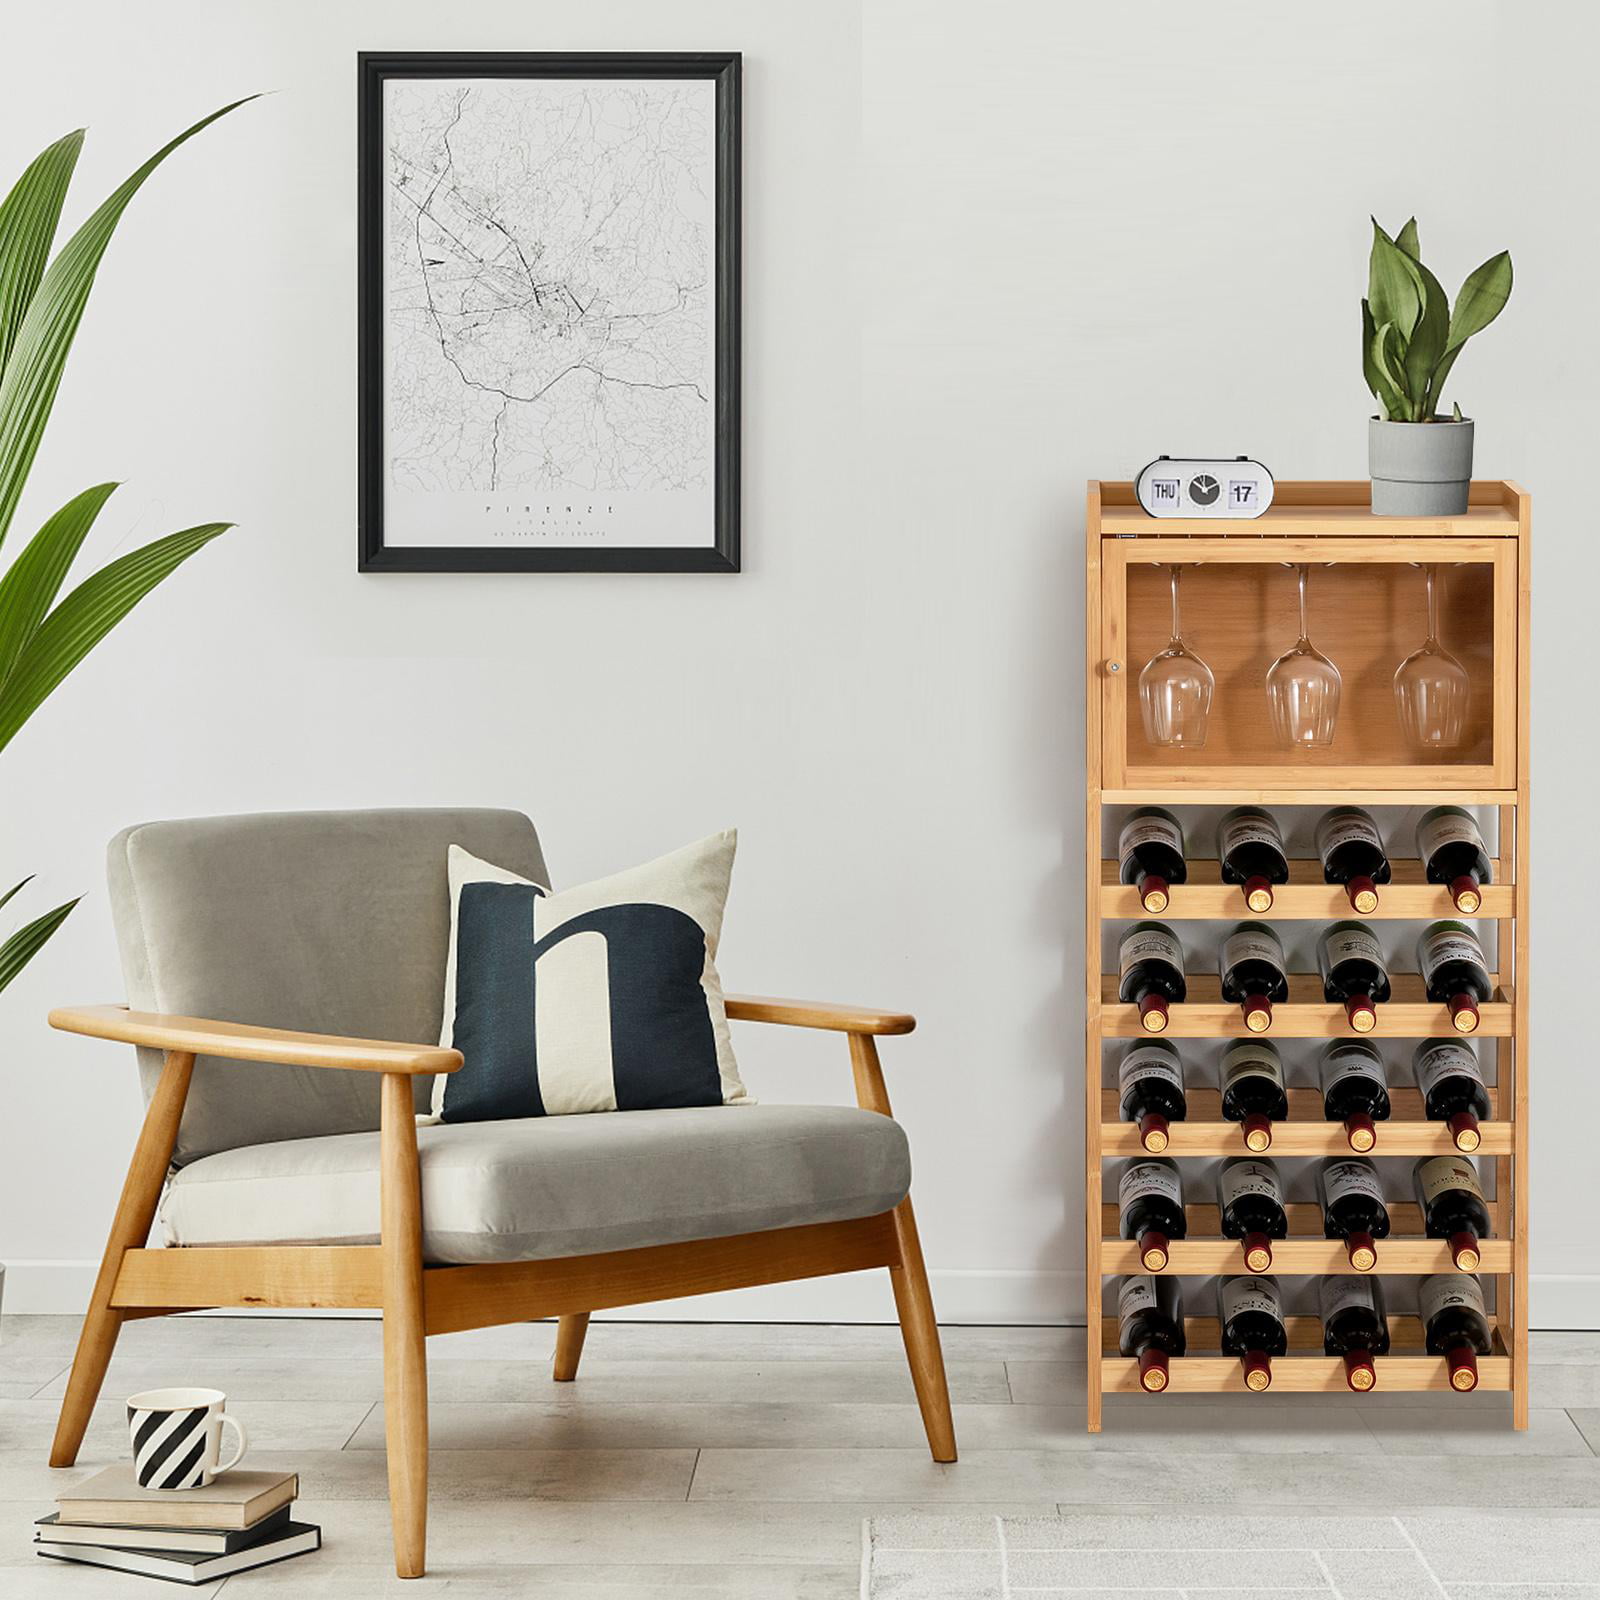 Giantex Wine Bar Cabinet, Wine Racks for 18 Bottles, Glass Holder